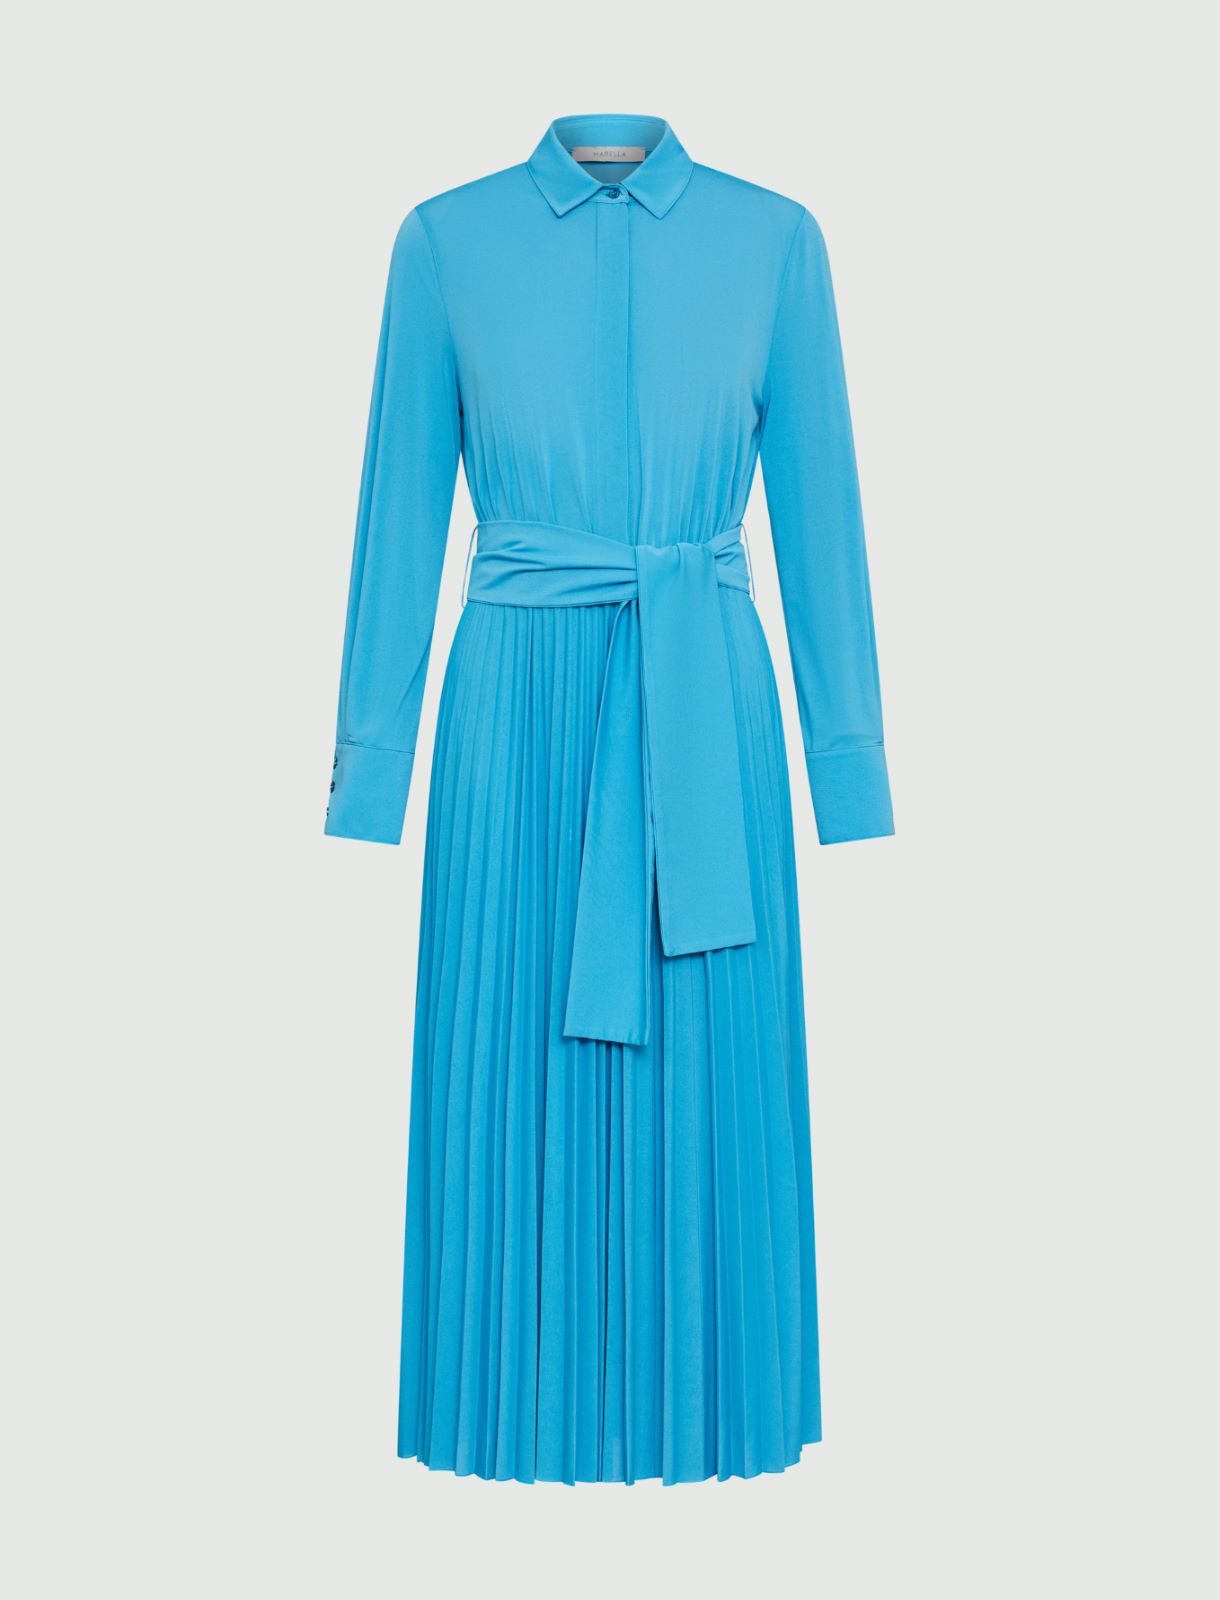 Pleated dress, turquoise | Marella